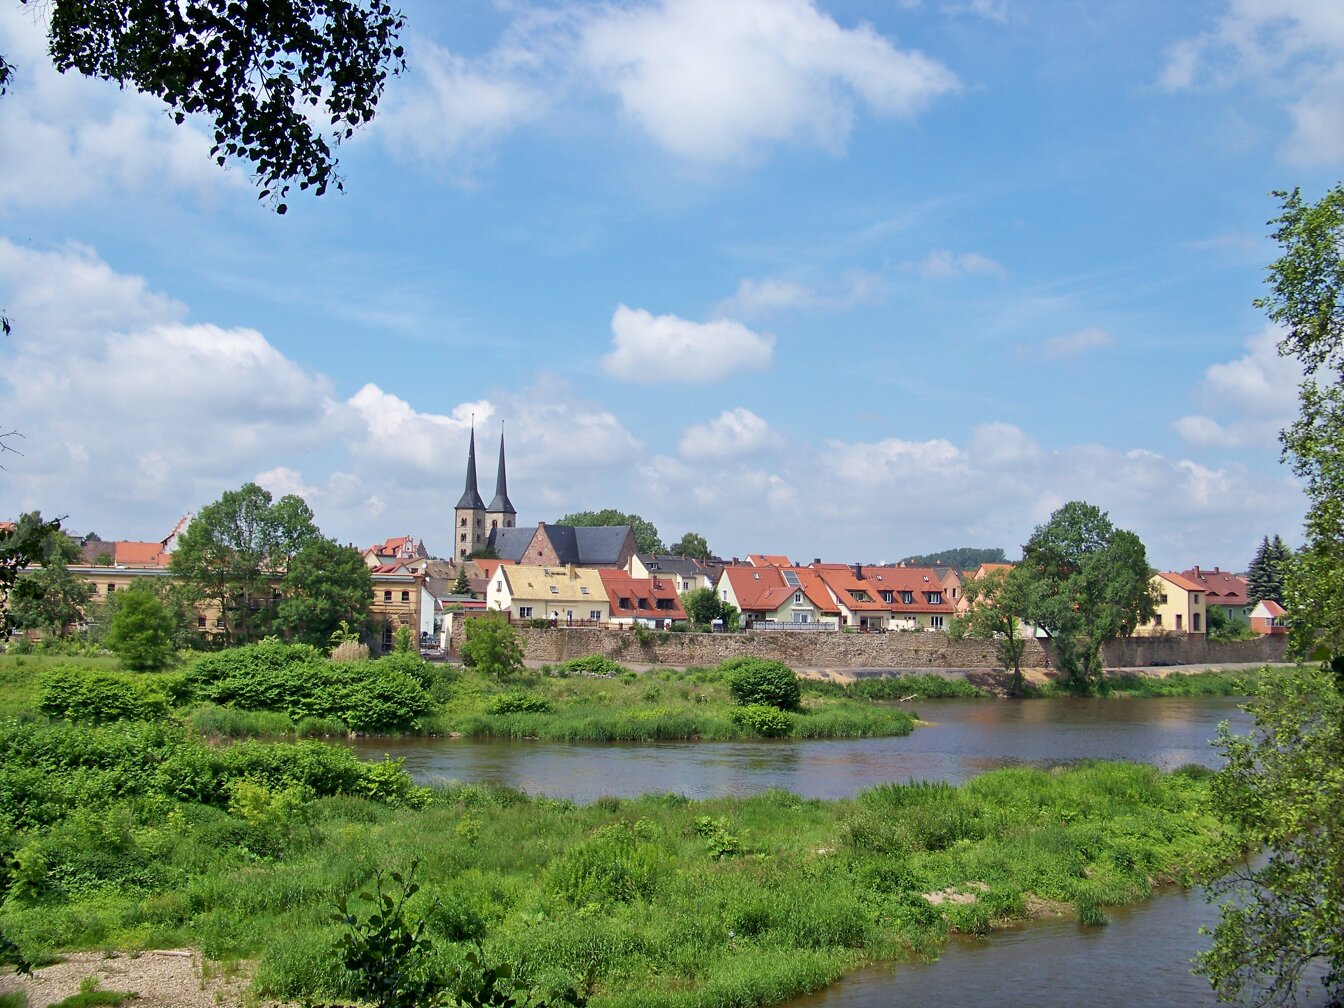 Bild der Stadt Grimma